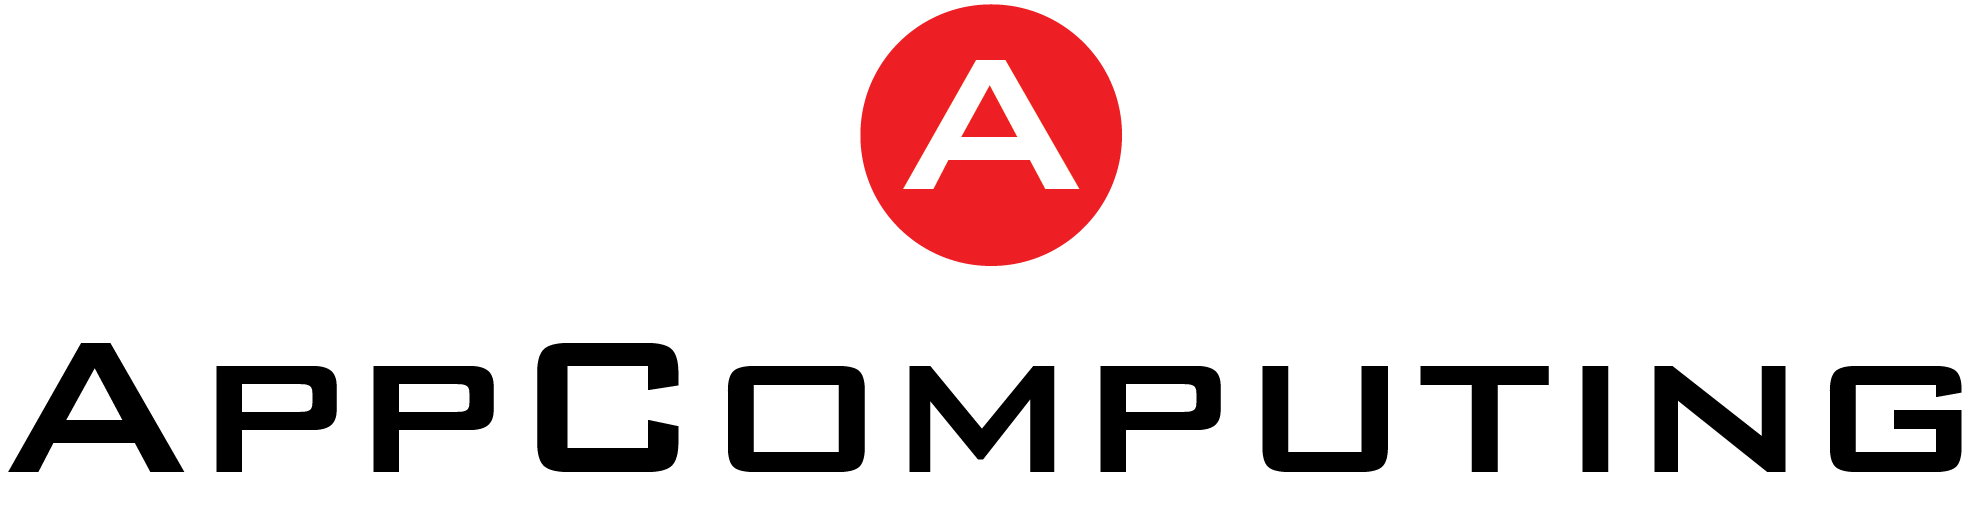 AppComputing - AppComputing - Planification des ressources de fabrication (MRP) basée sur la projection des ventes